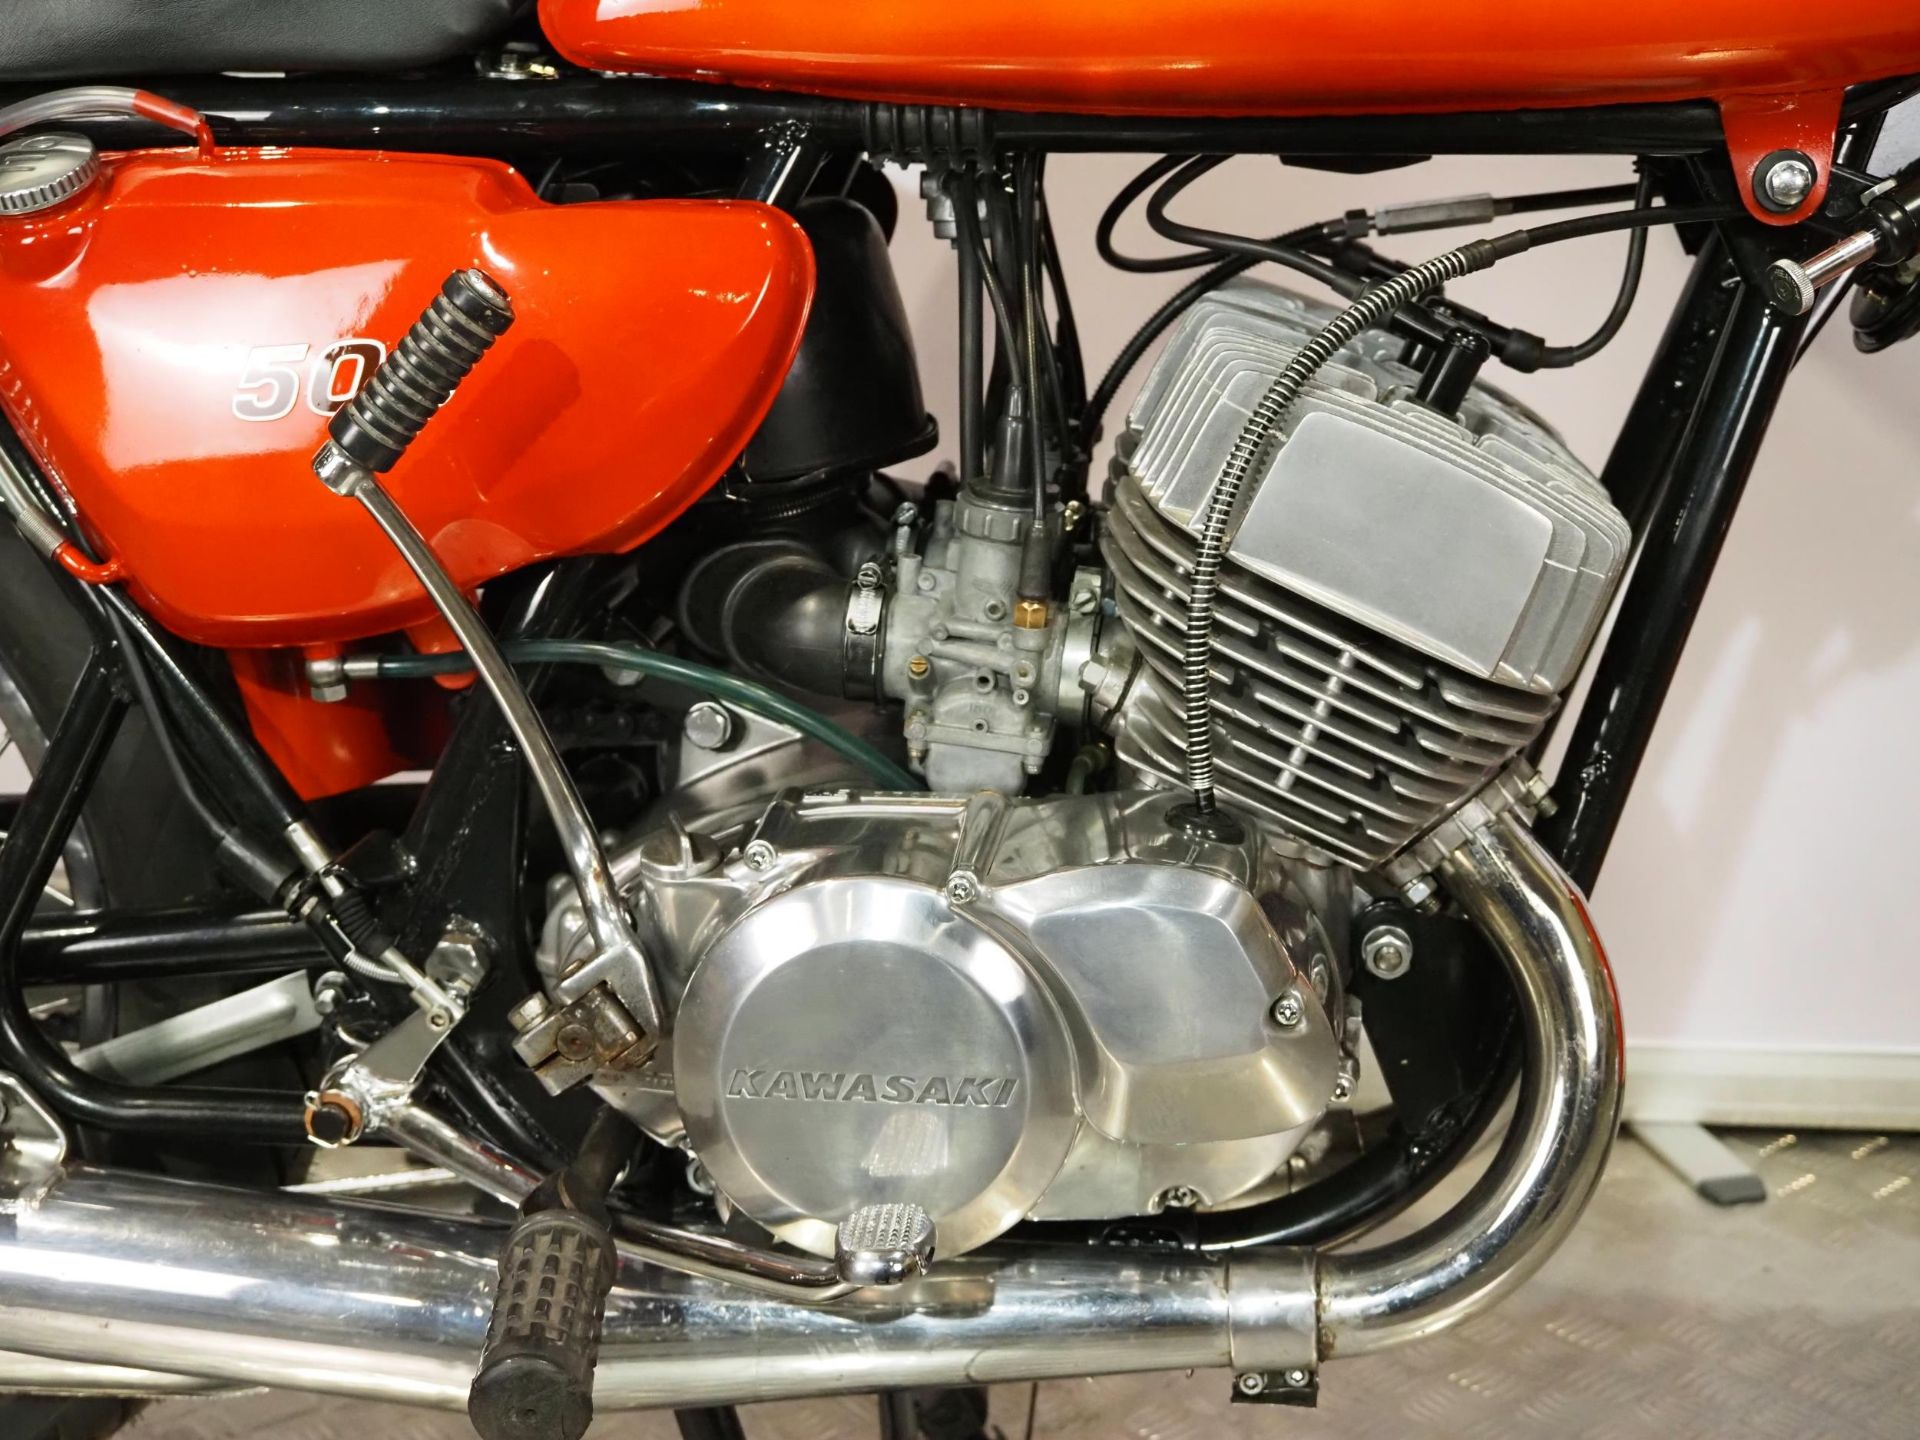 Kawasaki H1B 500 motorcycle. 1971. 498cc. Frame No. KAF-52740 Engine No. KAE-57019 Runs and rides. - Image 4 of 9